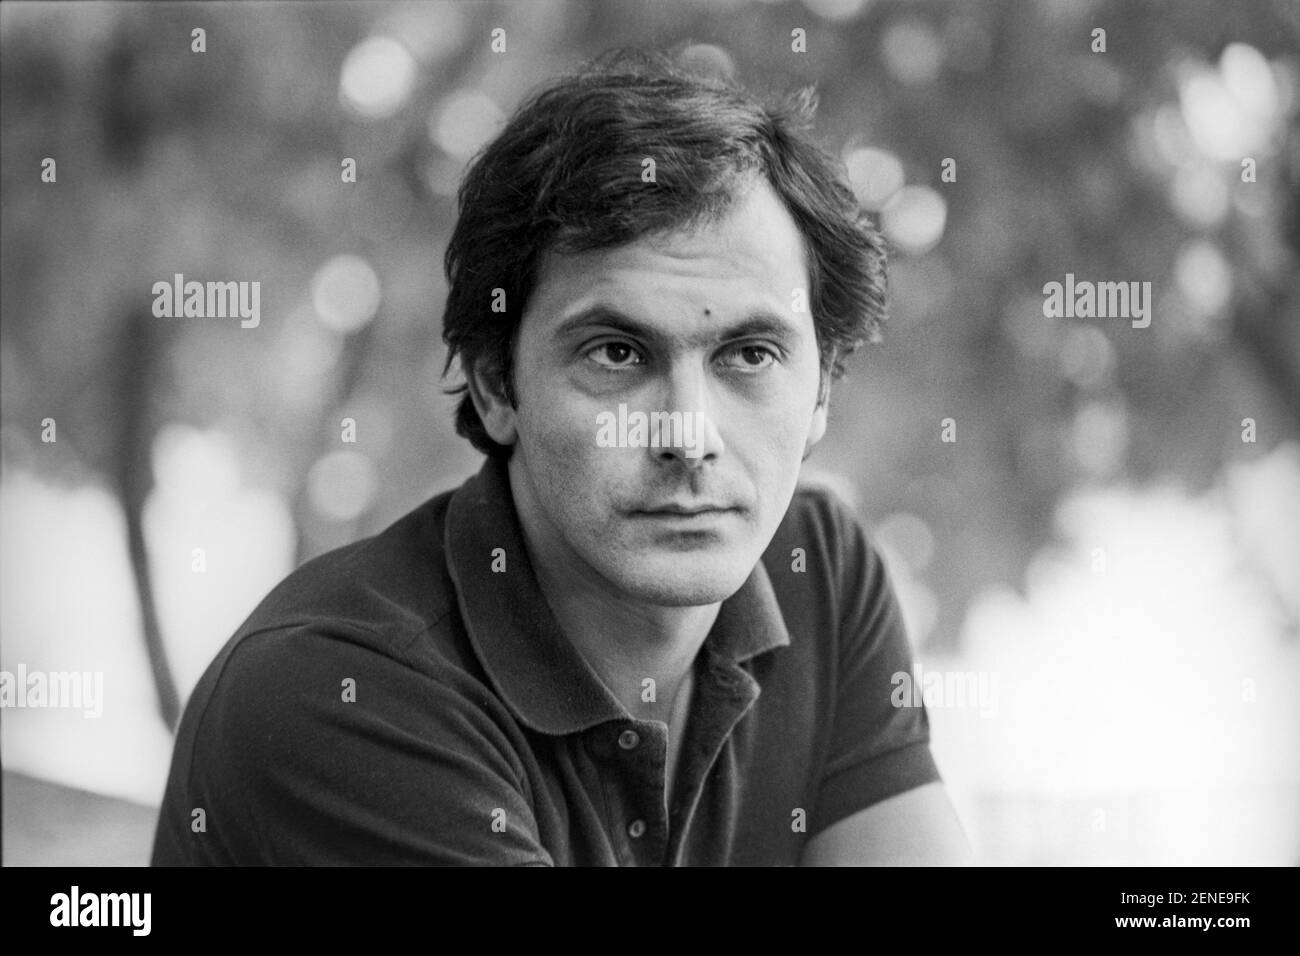 Porträt des französischen Schauspielers Jean-Pierre Bacri um 1976  Stockfotografie - Alamy